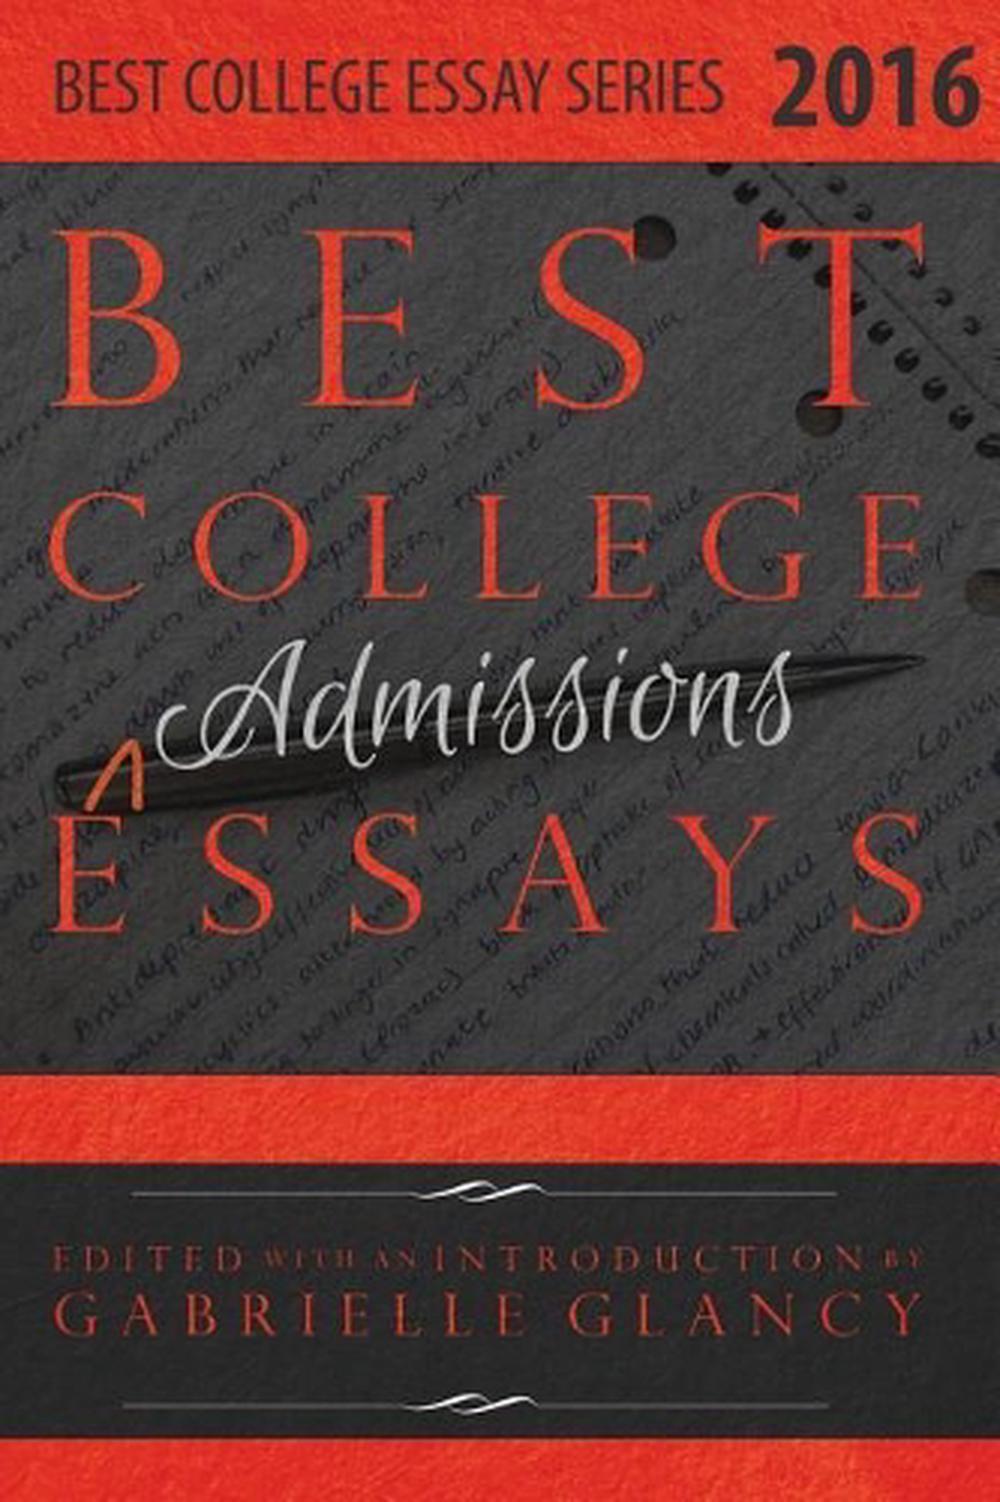 #1 Amazon Best Seller: College Essay Essentials by Ethan Sawyer